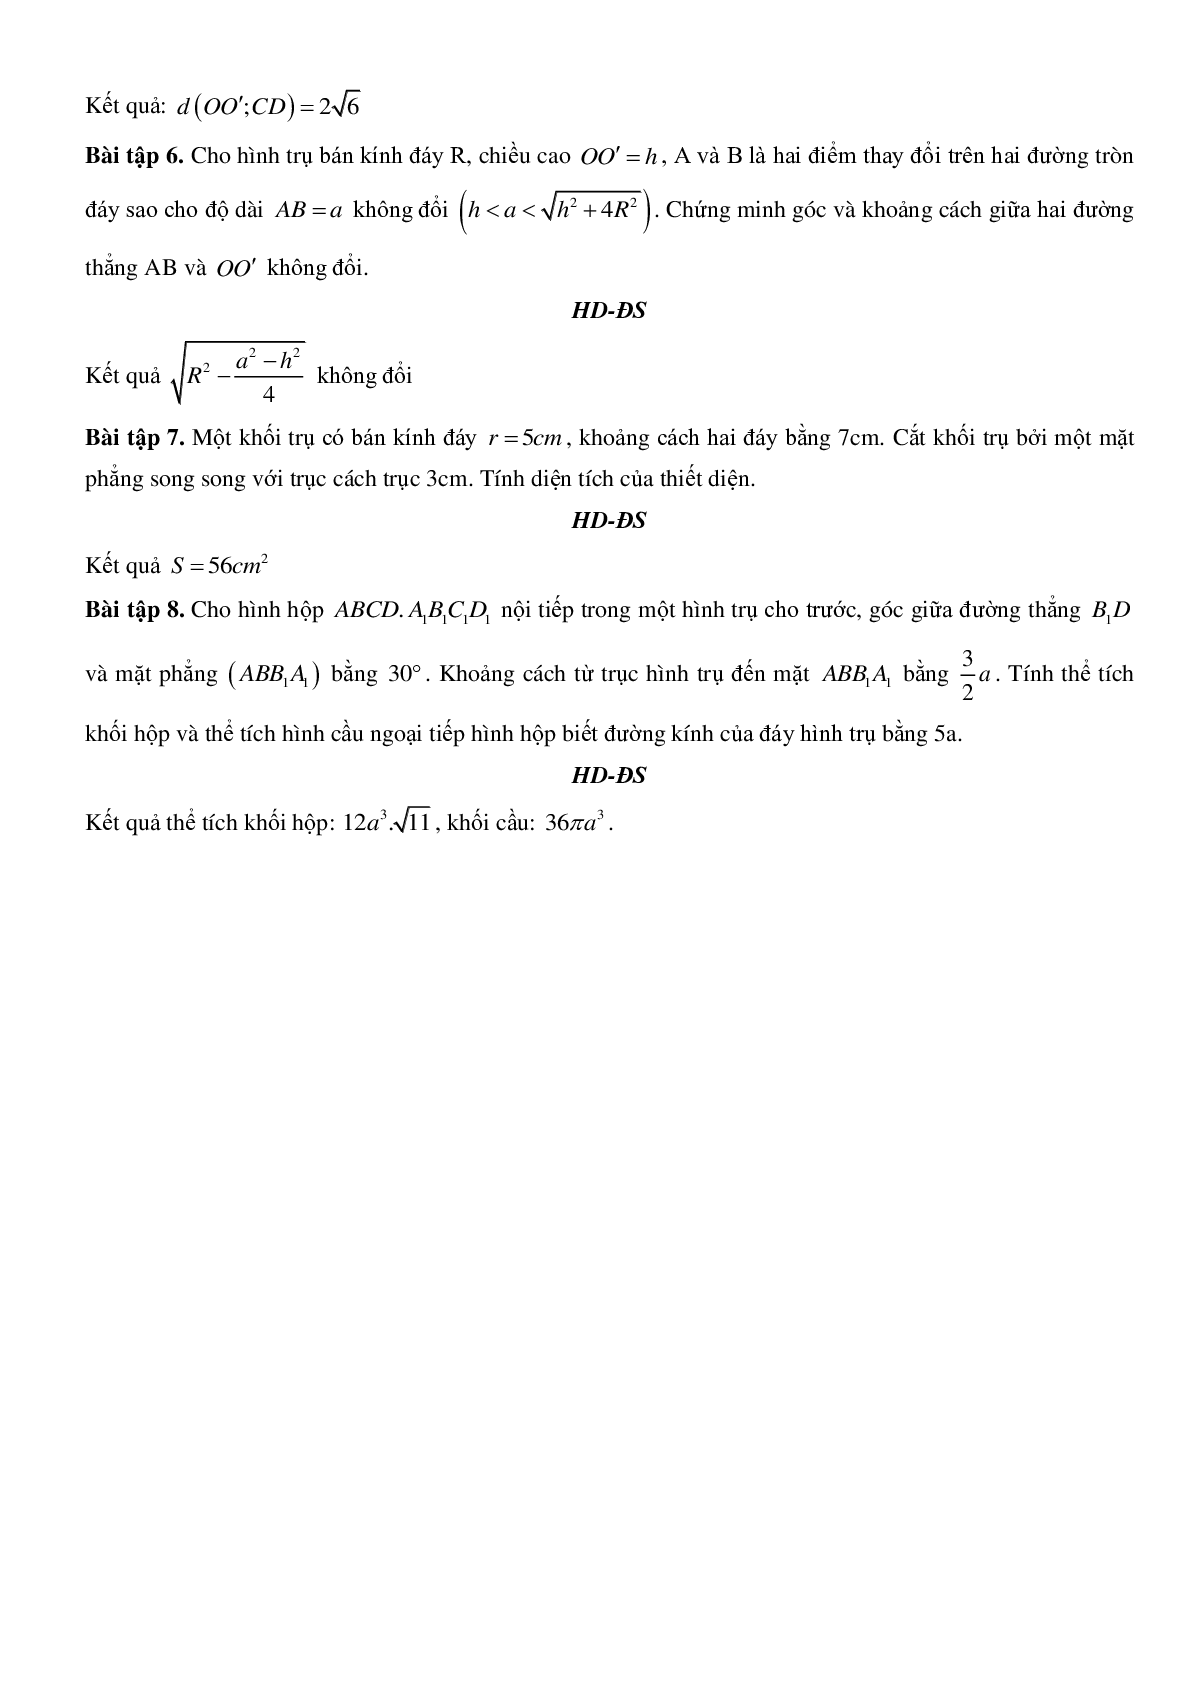 Mặt trụ - Hình trụ - Khối trụ - Ôn thi THPT QG môn toán (trang 9)